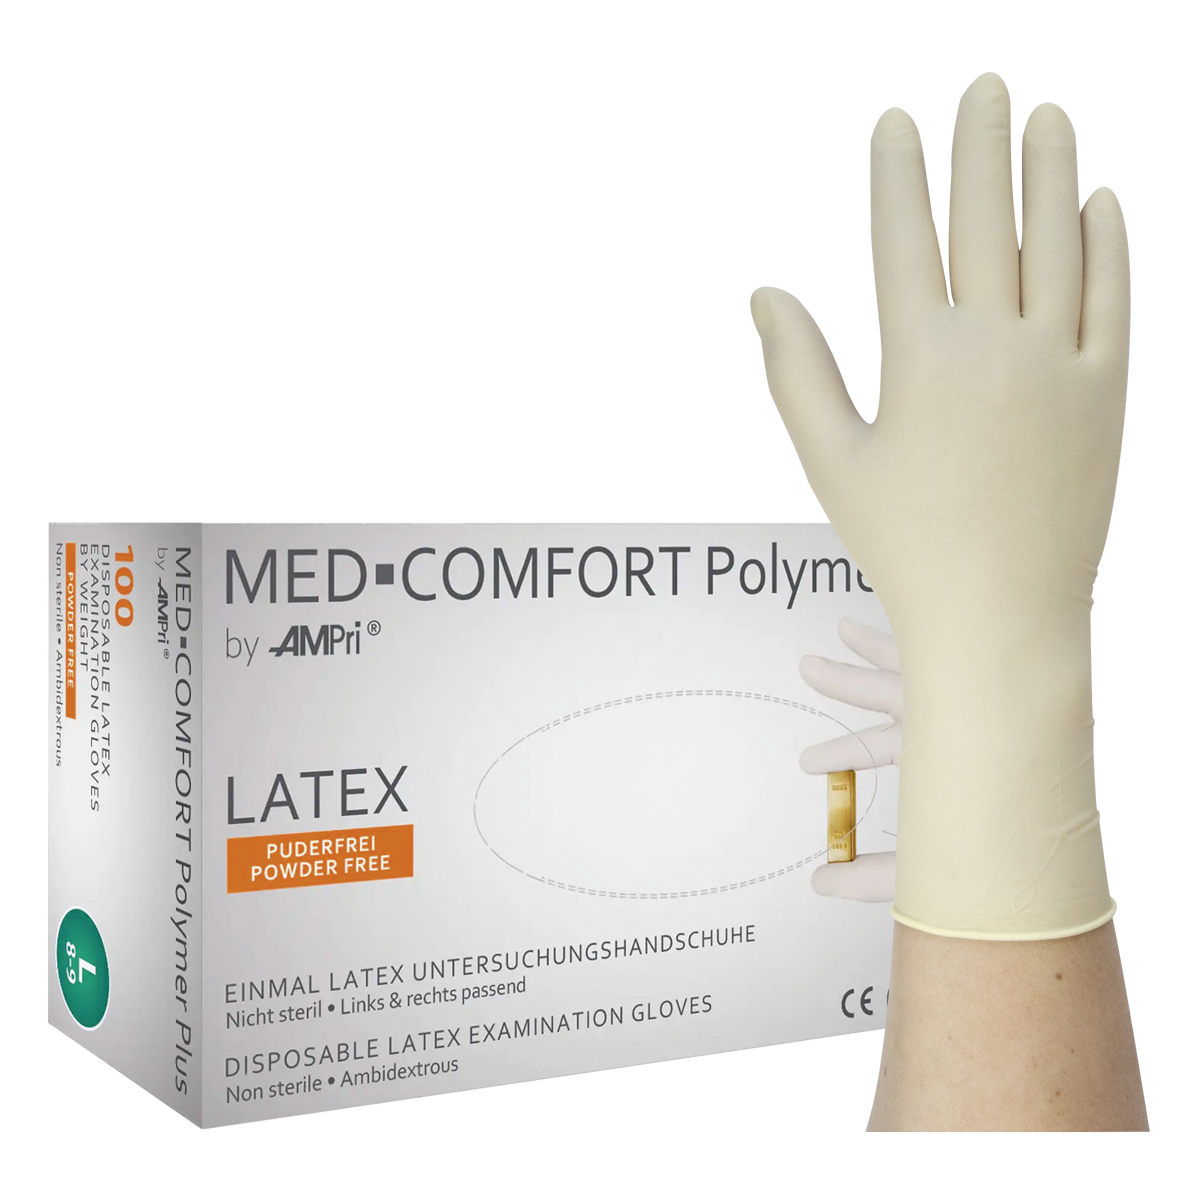 MED-COMFORT Polymer Plus - Latexhandschuhe, puderfrei, 100 Stück (01034)